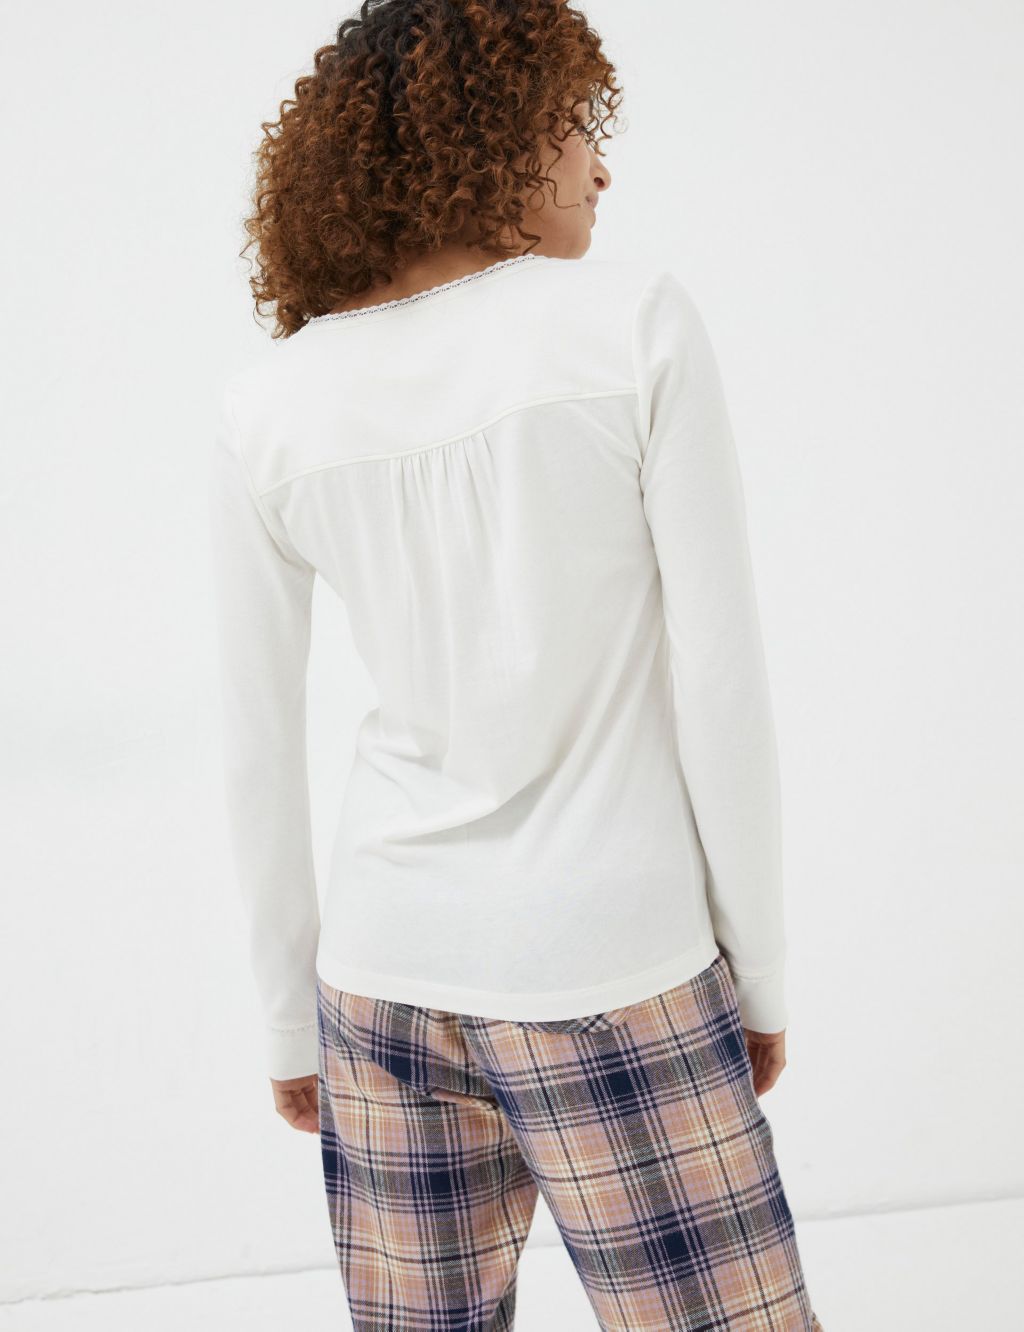 Cotton Modal Lace Trim Pyjama Top image 3